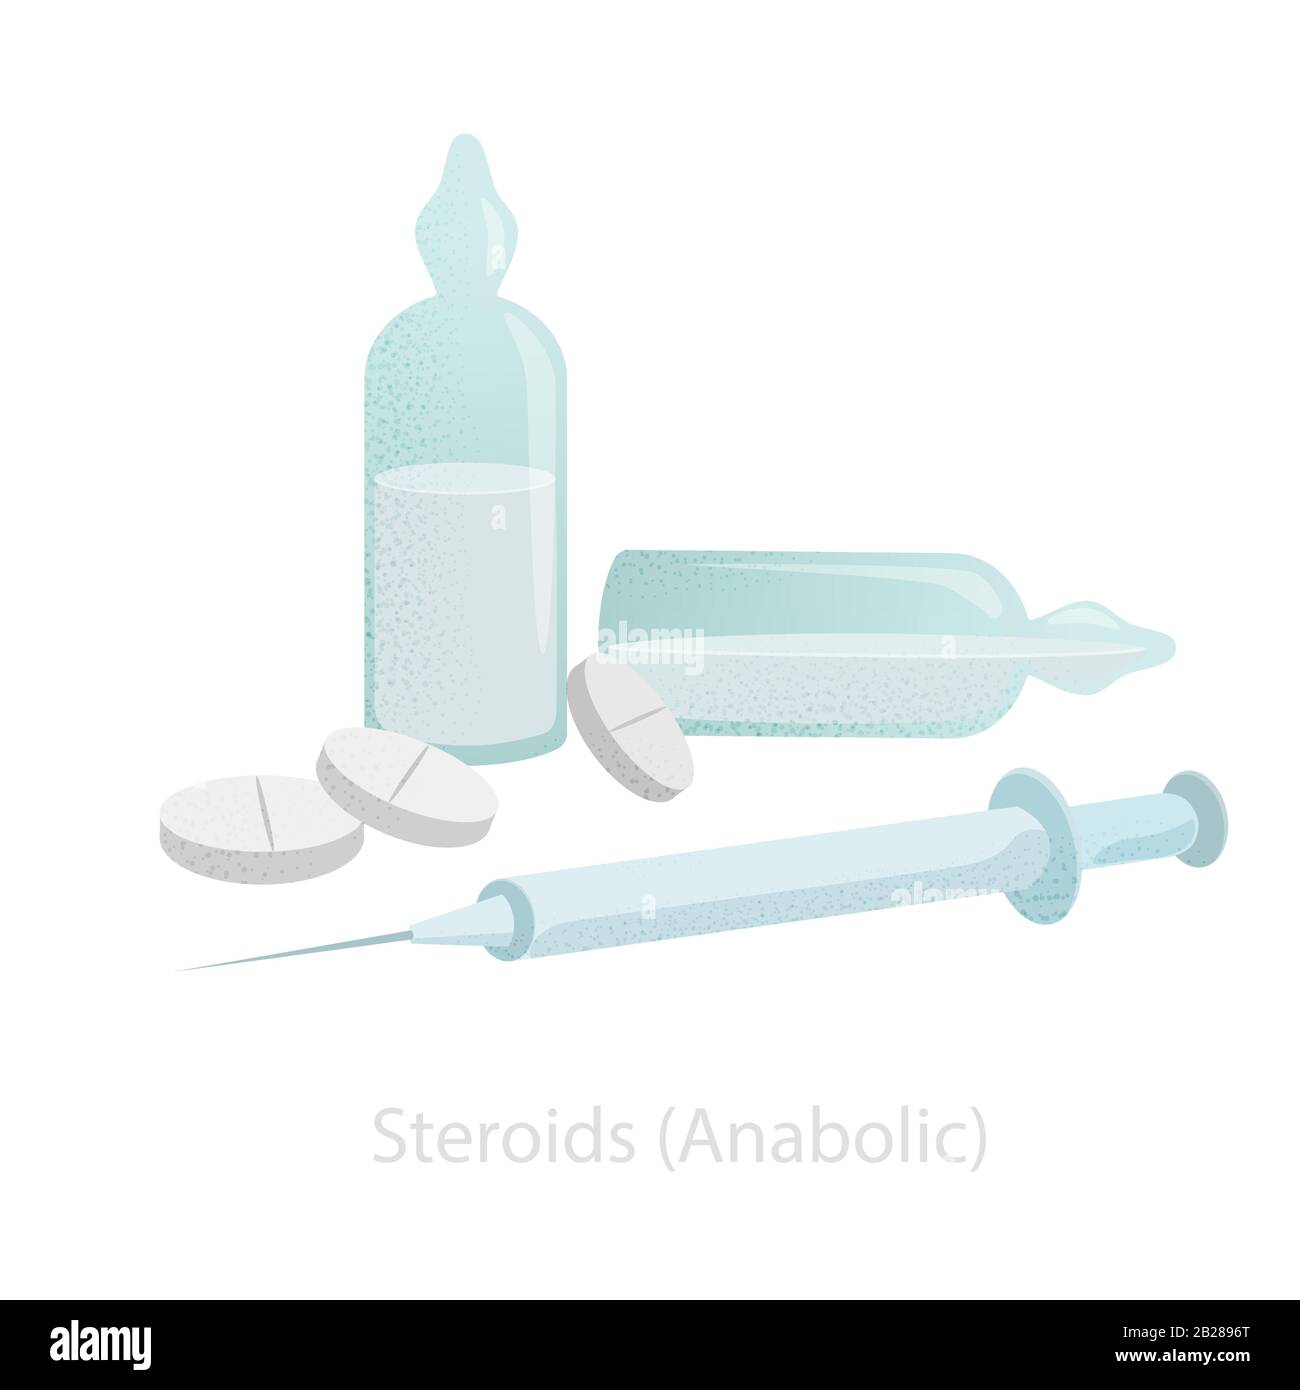 3 Altri fantastici strumenti per spaccio steroidi